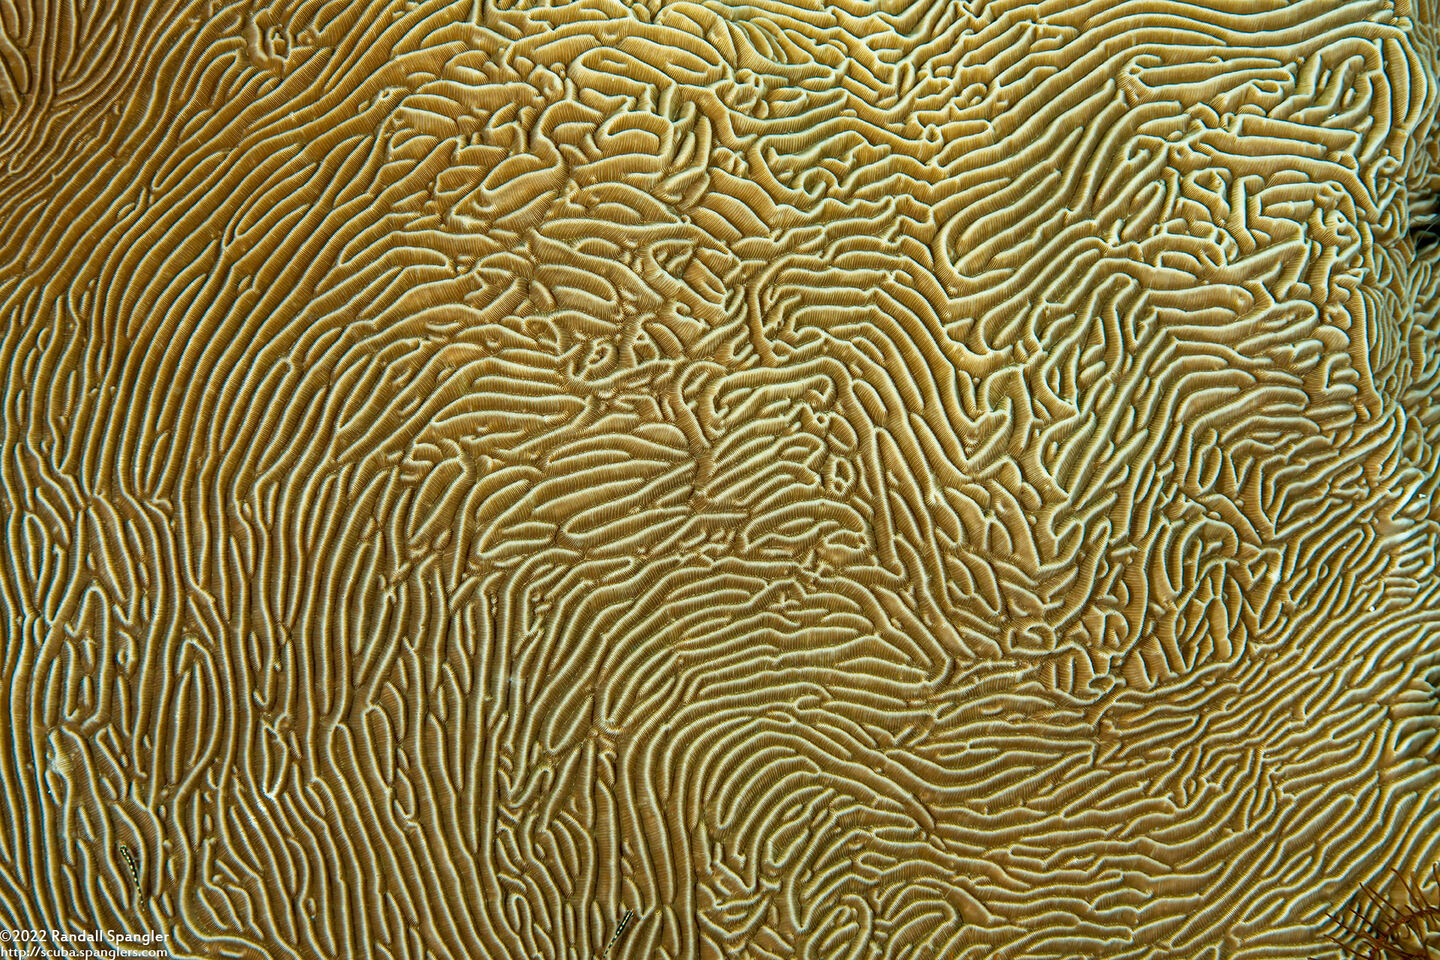 Pachyseris speciosa (Corrugated Coral)